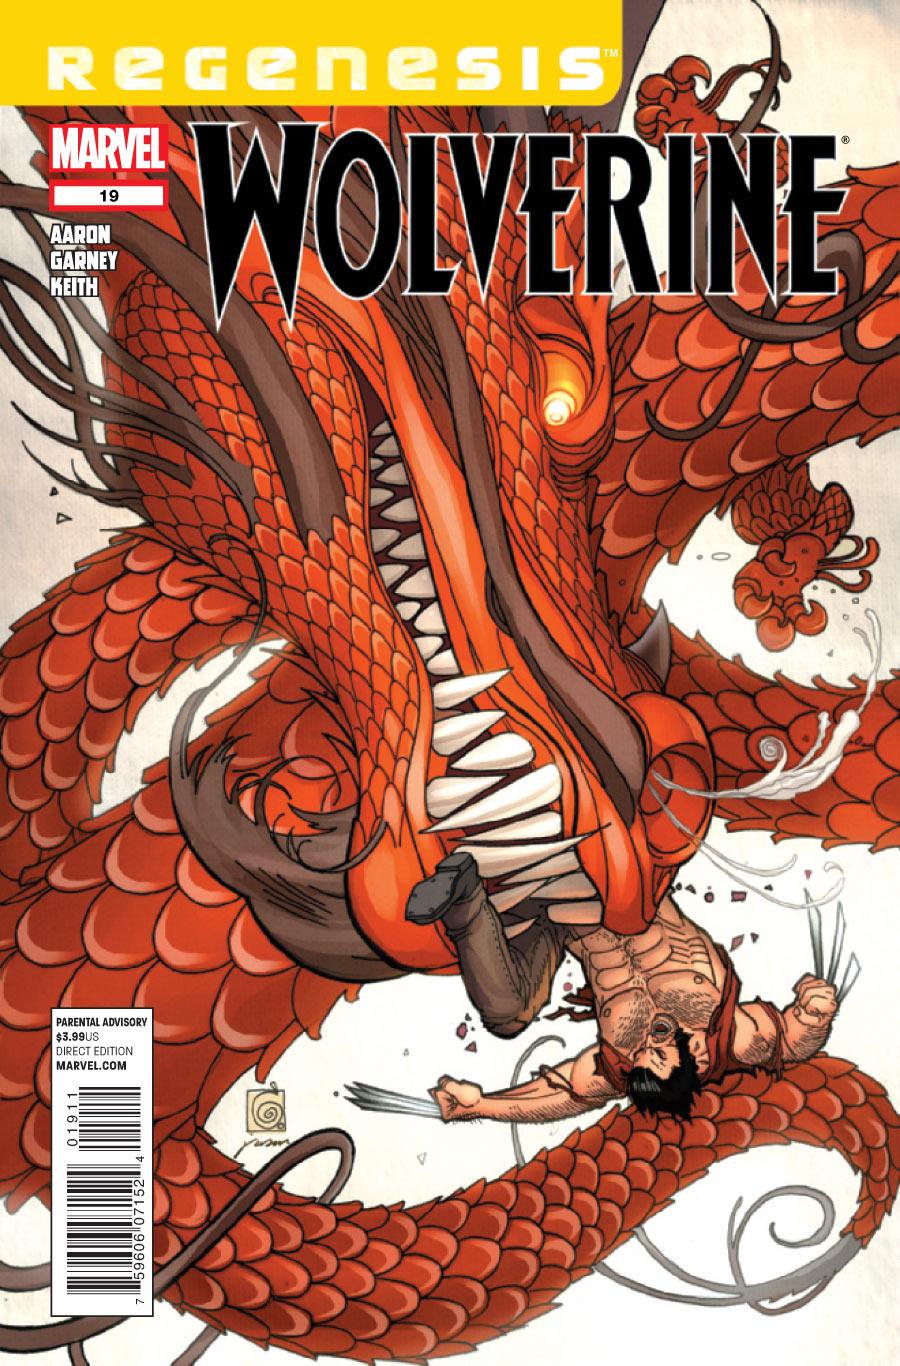 Wolverine Vol. 4 #19